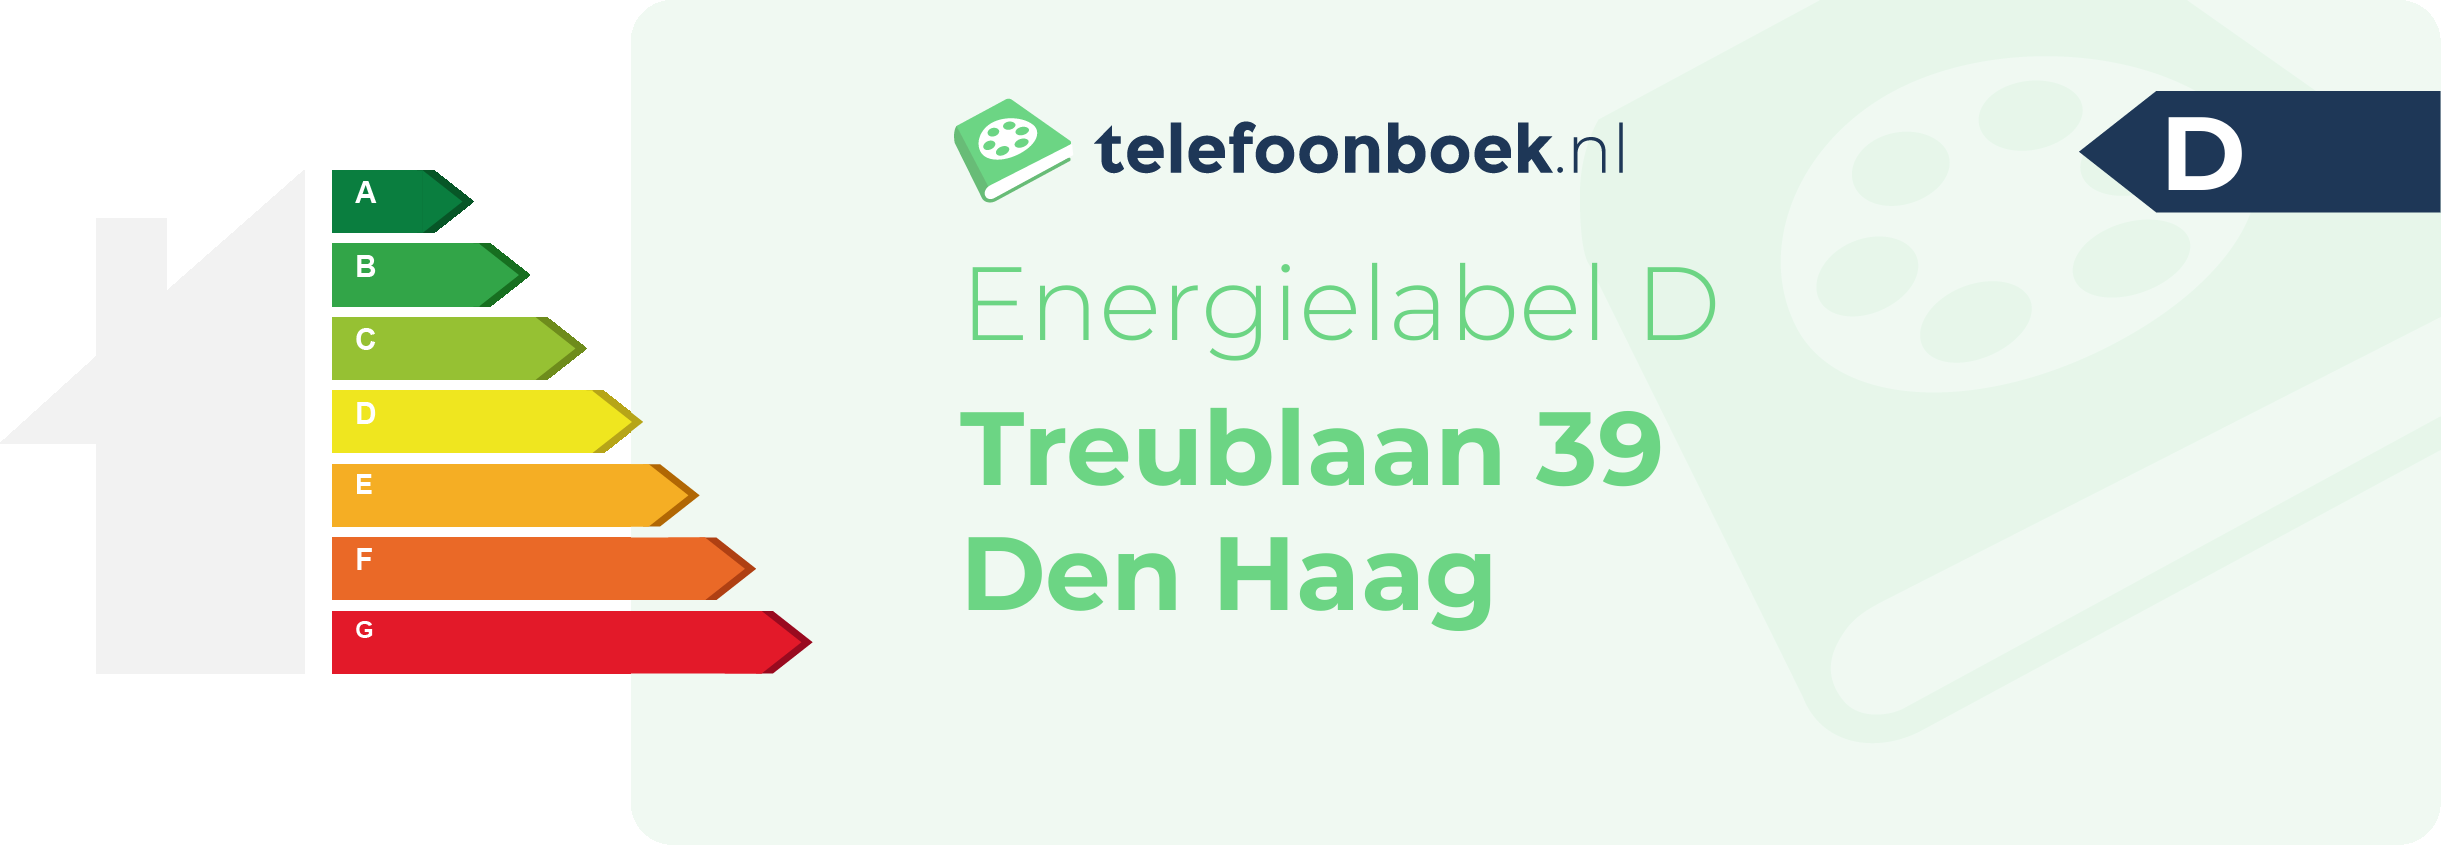 Energielabel Treublaan 39 Den Haag